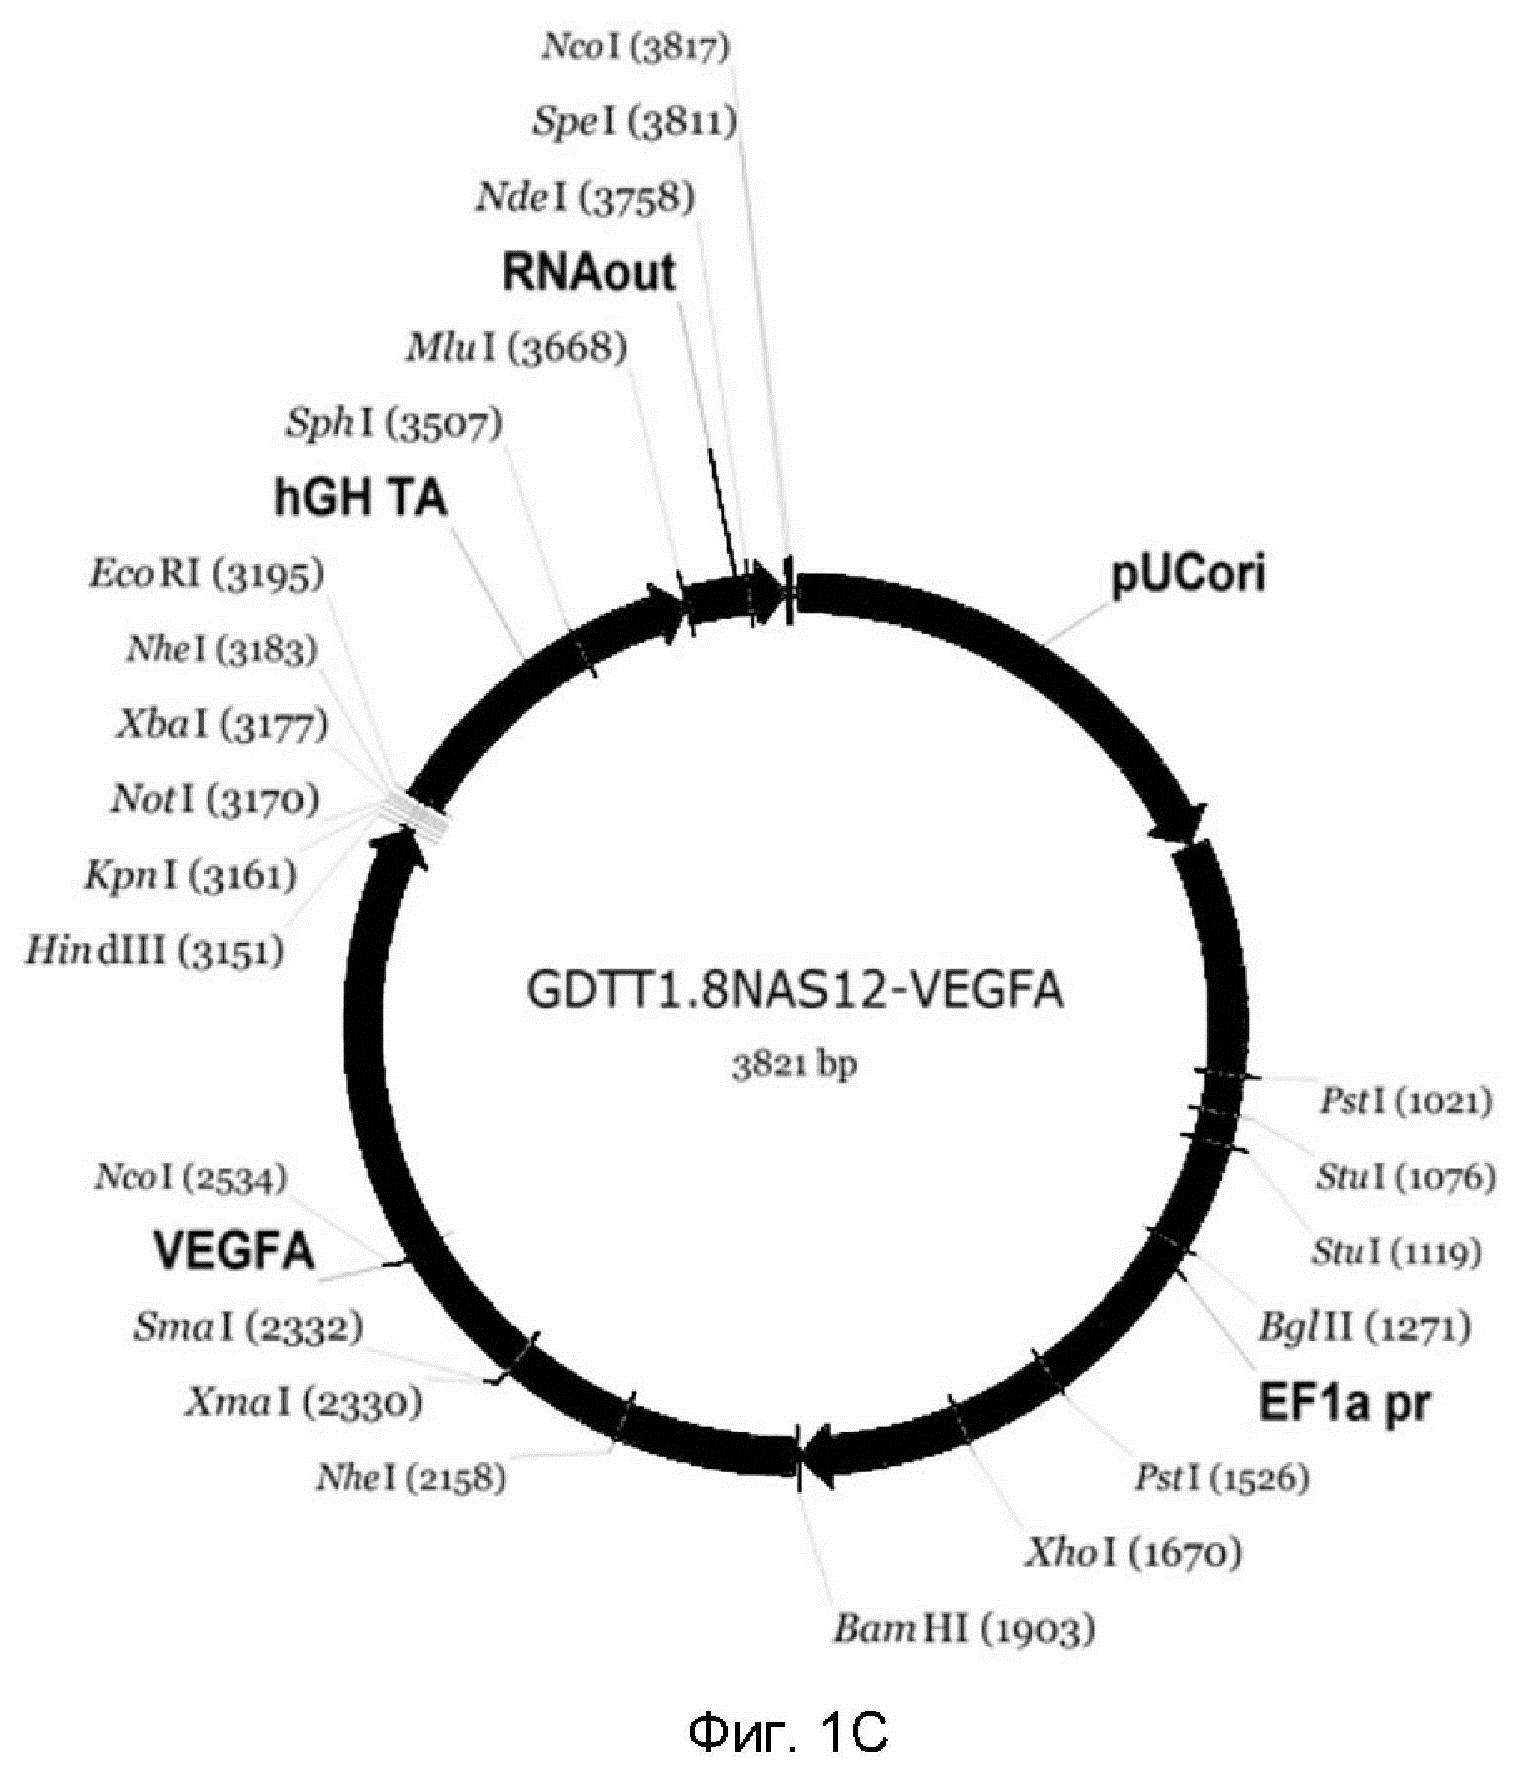 ДНК-вектор GDTT1.8NAS12-VEGFA для повышения уровня экспрессии целевого гена VEGFA, способ его получения и применения